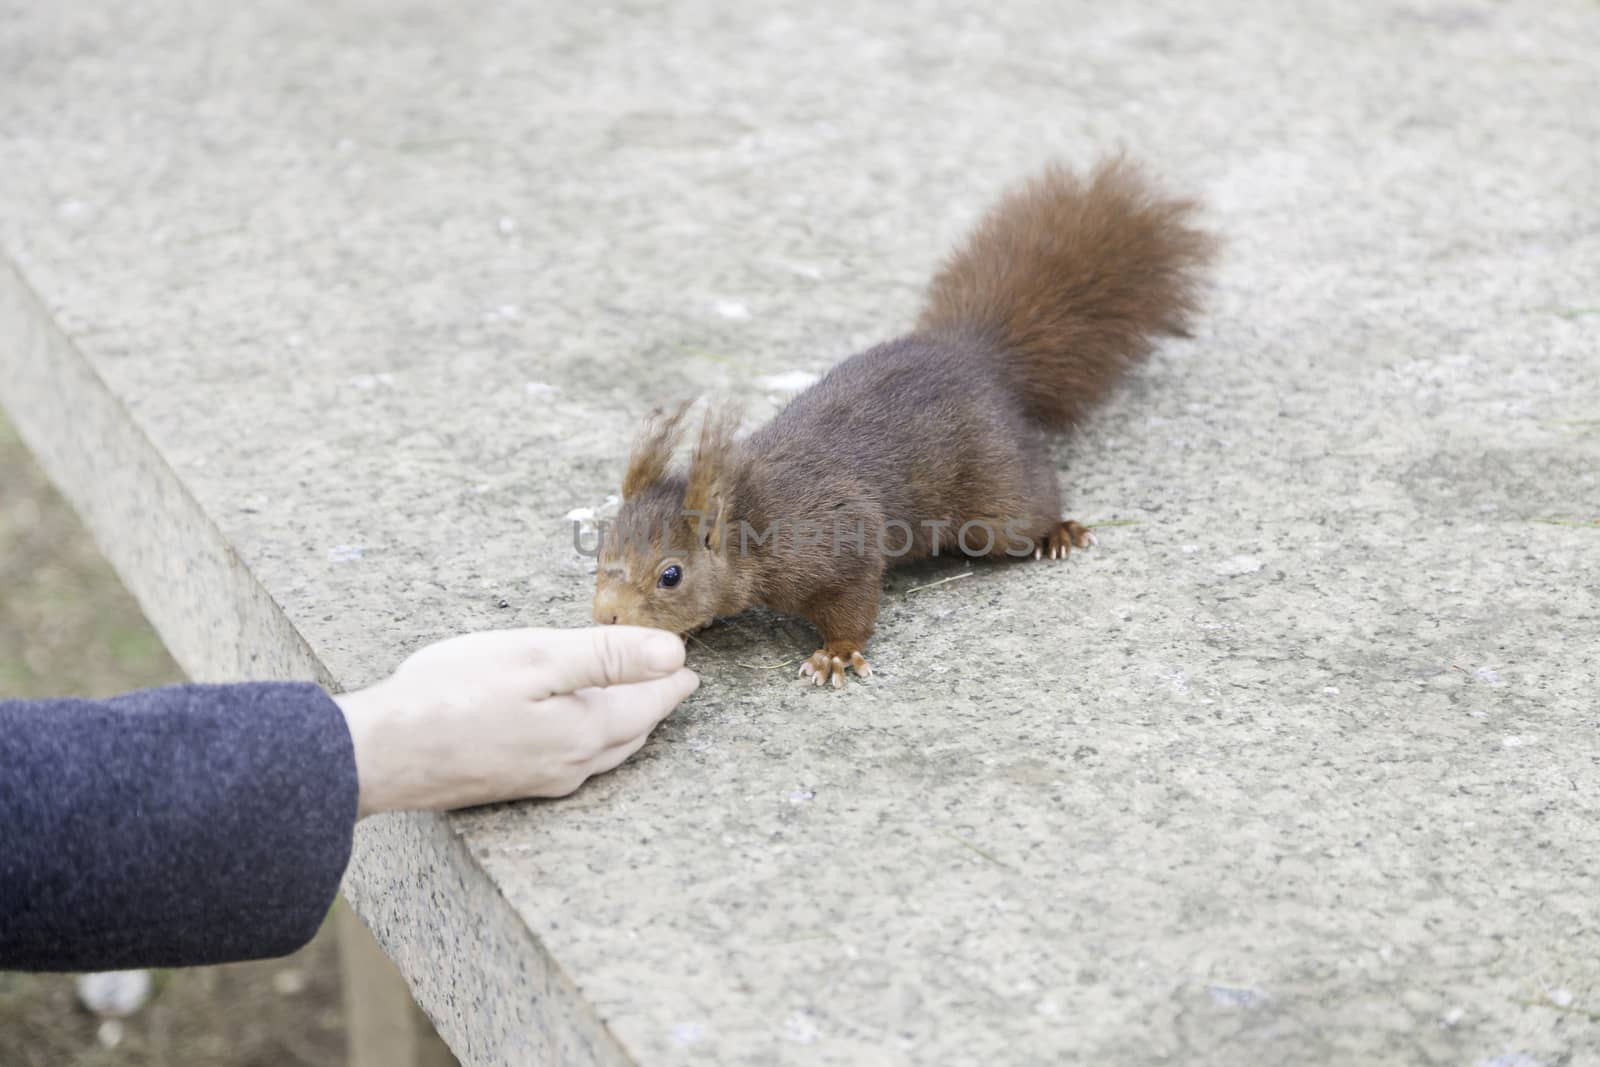 Feeding a squirrel by esebene